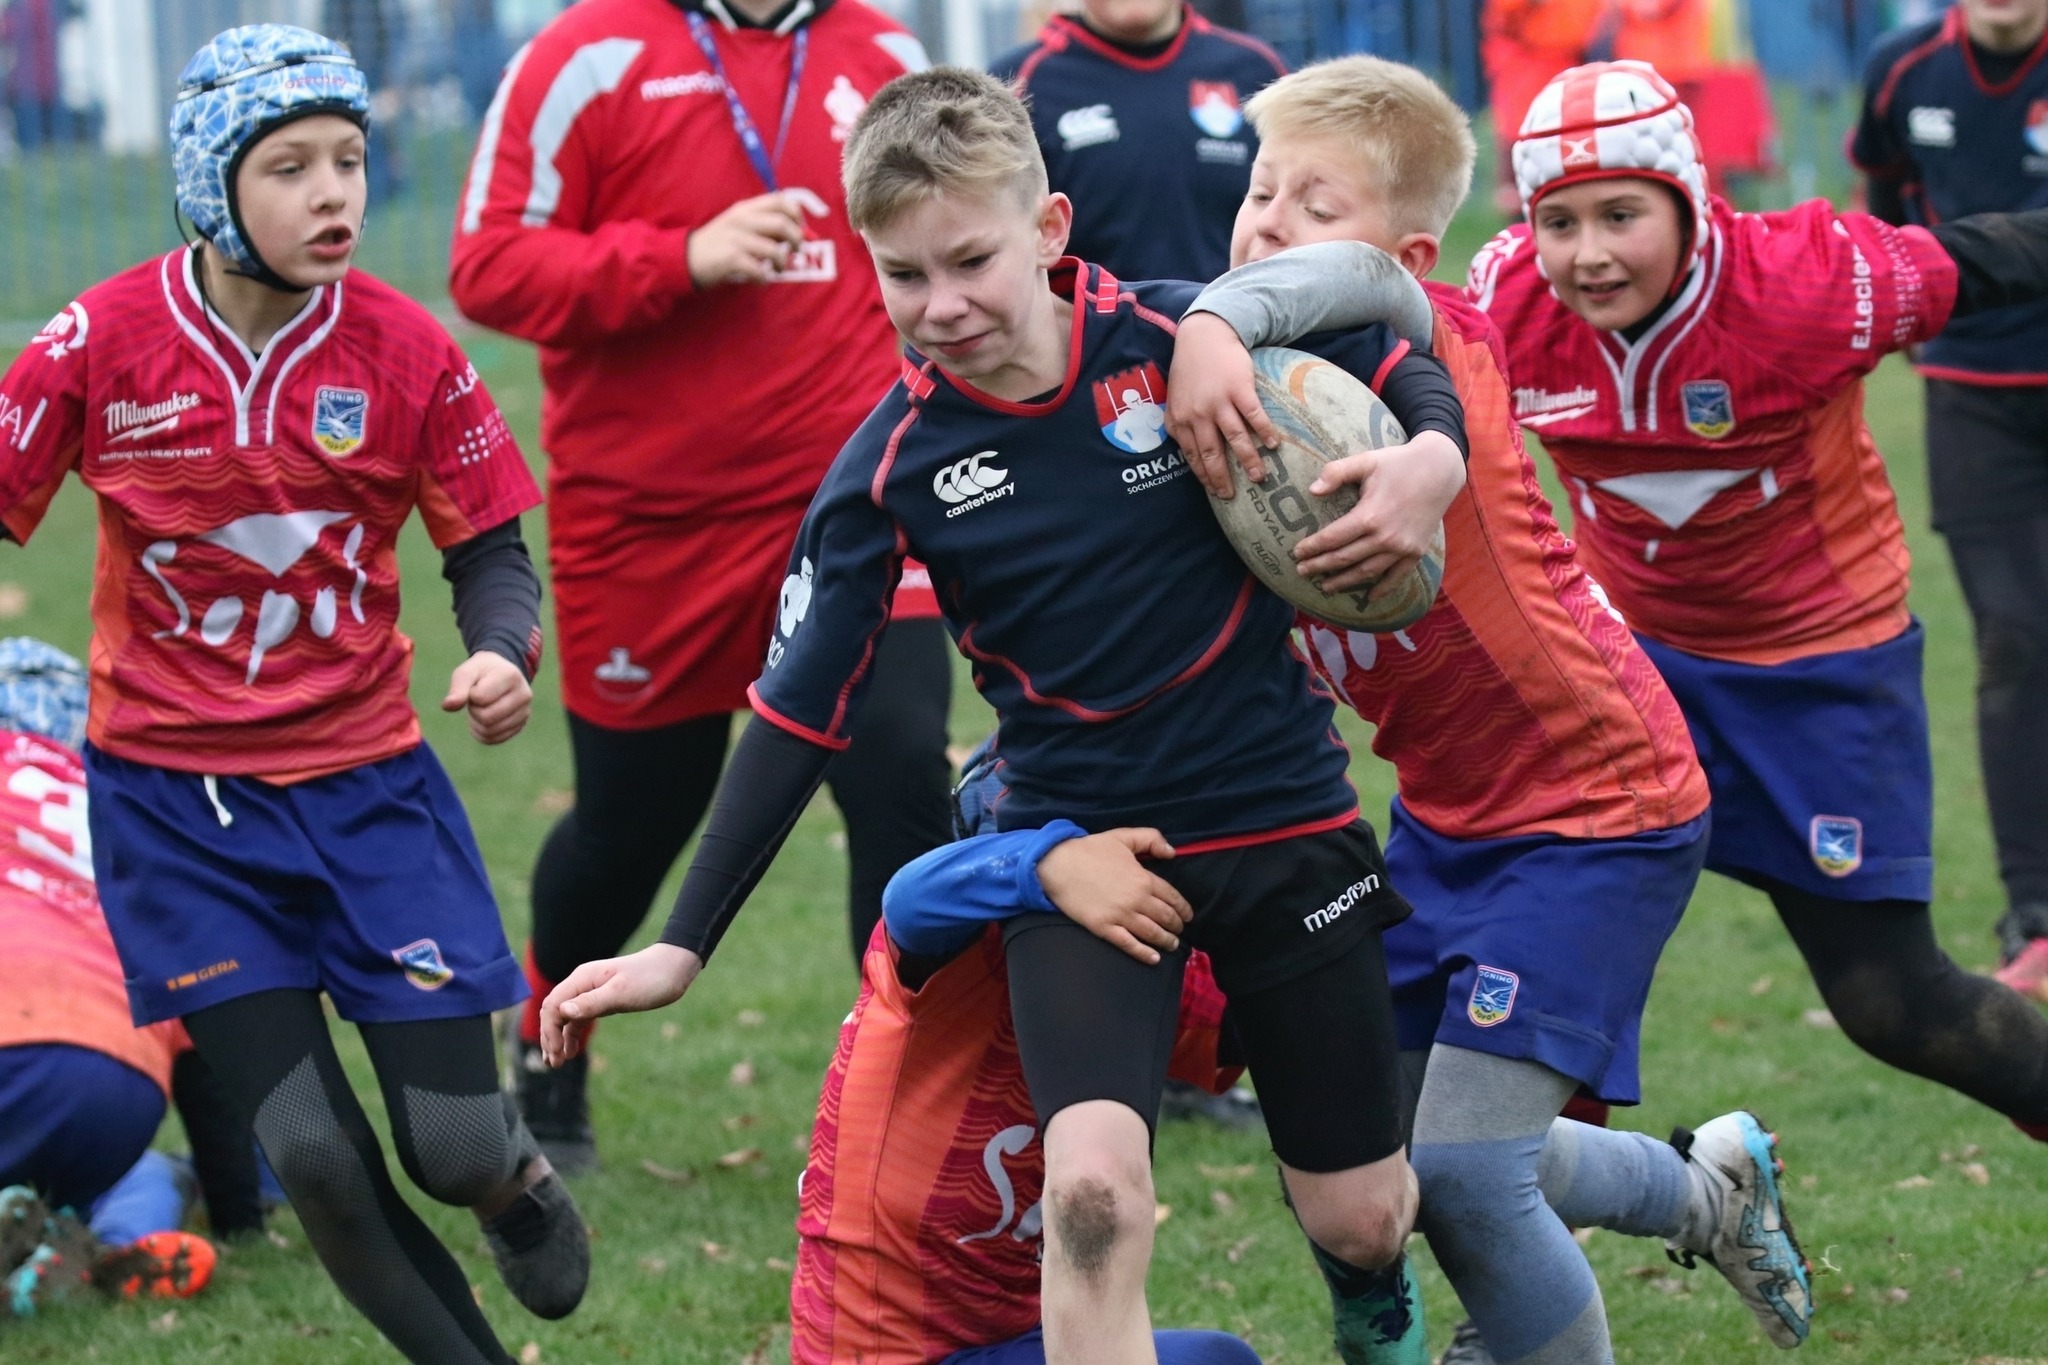 Zapraszamy na regionalny turniej dzieci i młodzieży w rugby w Sochaczewie